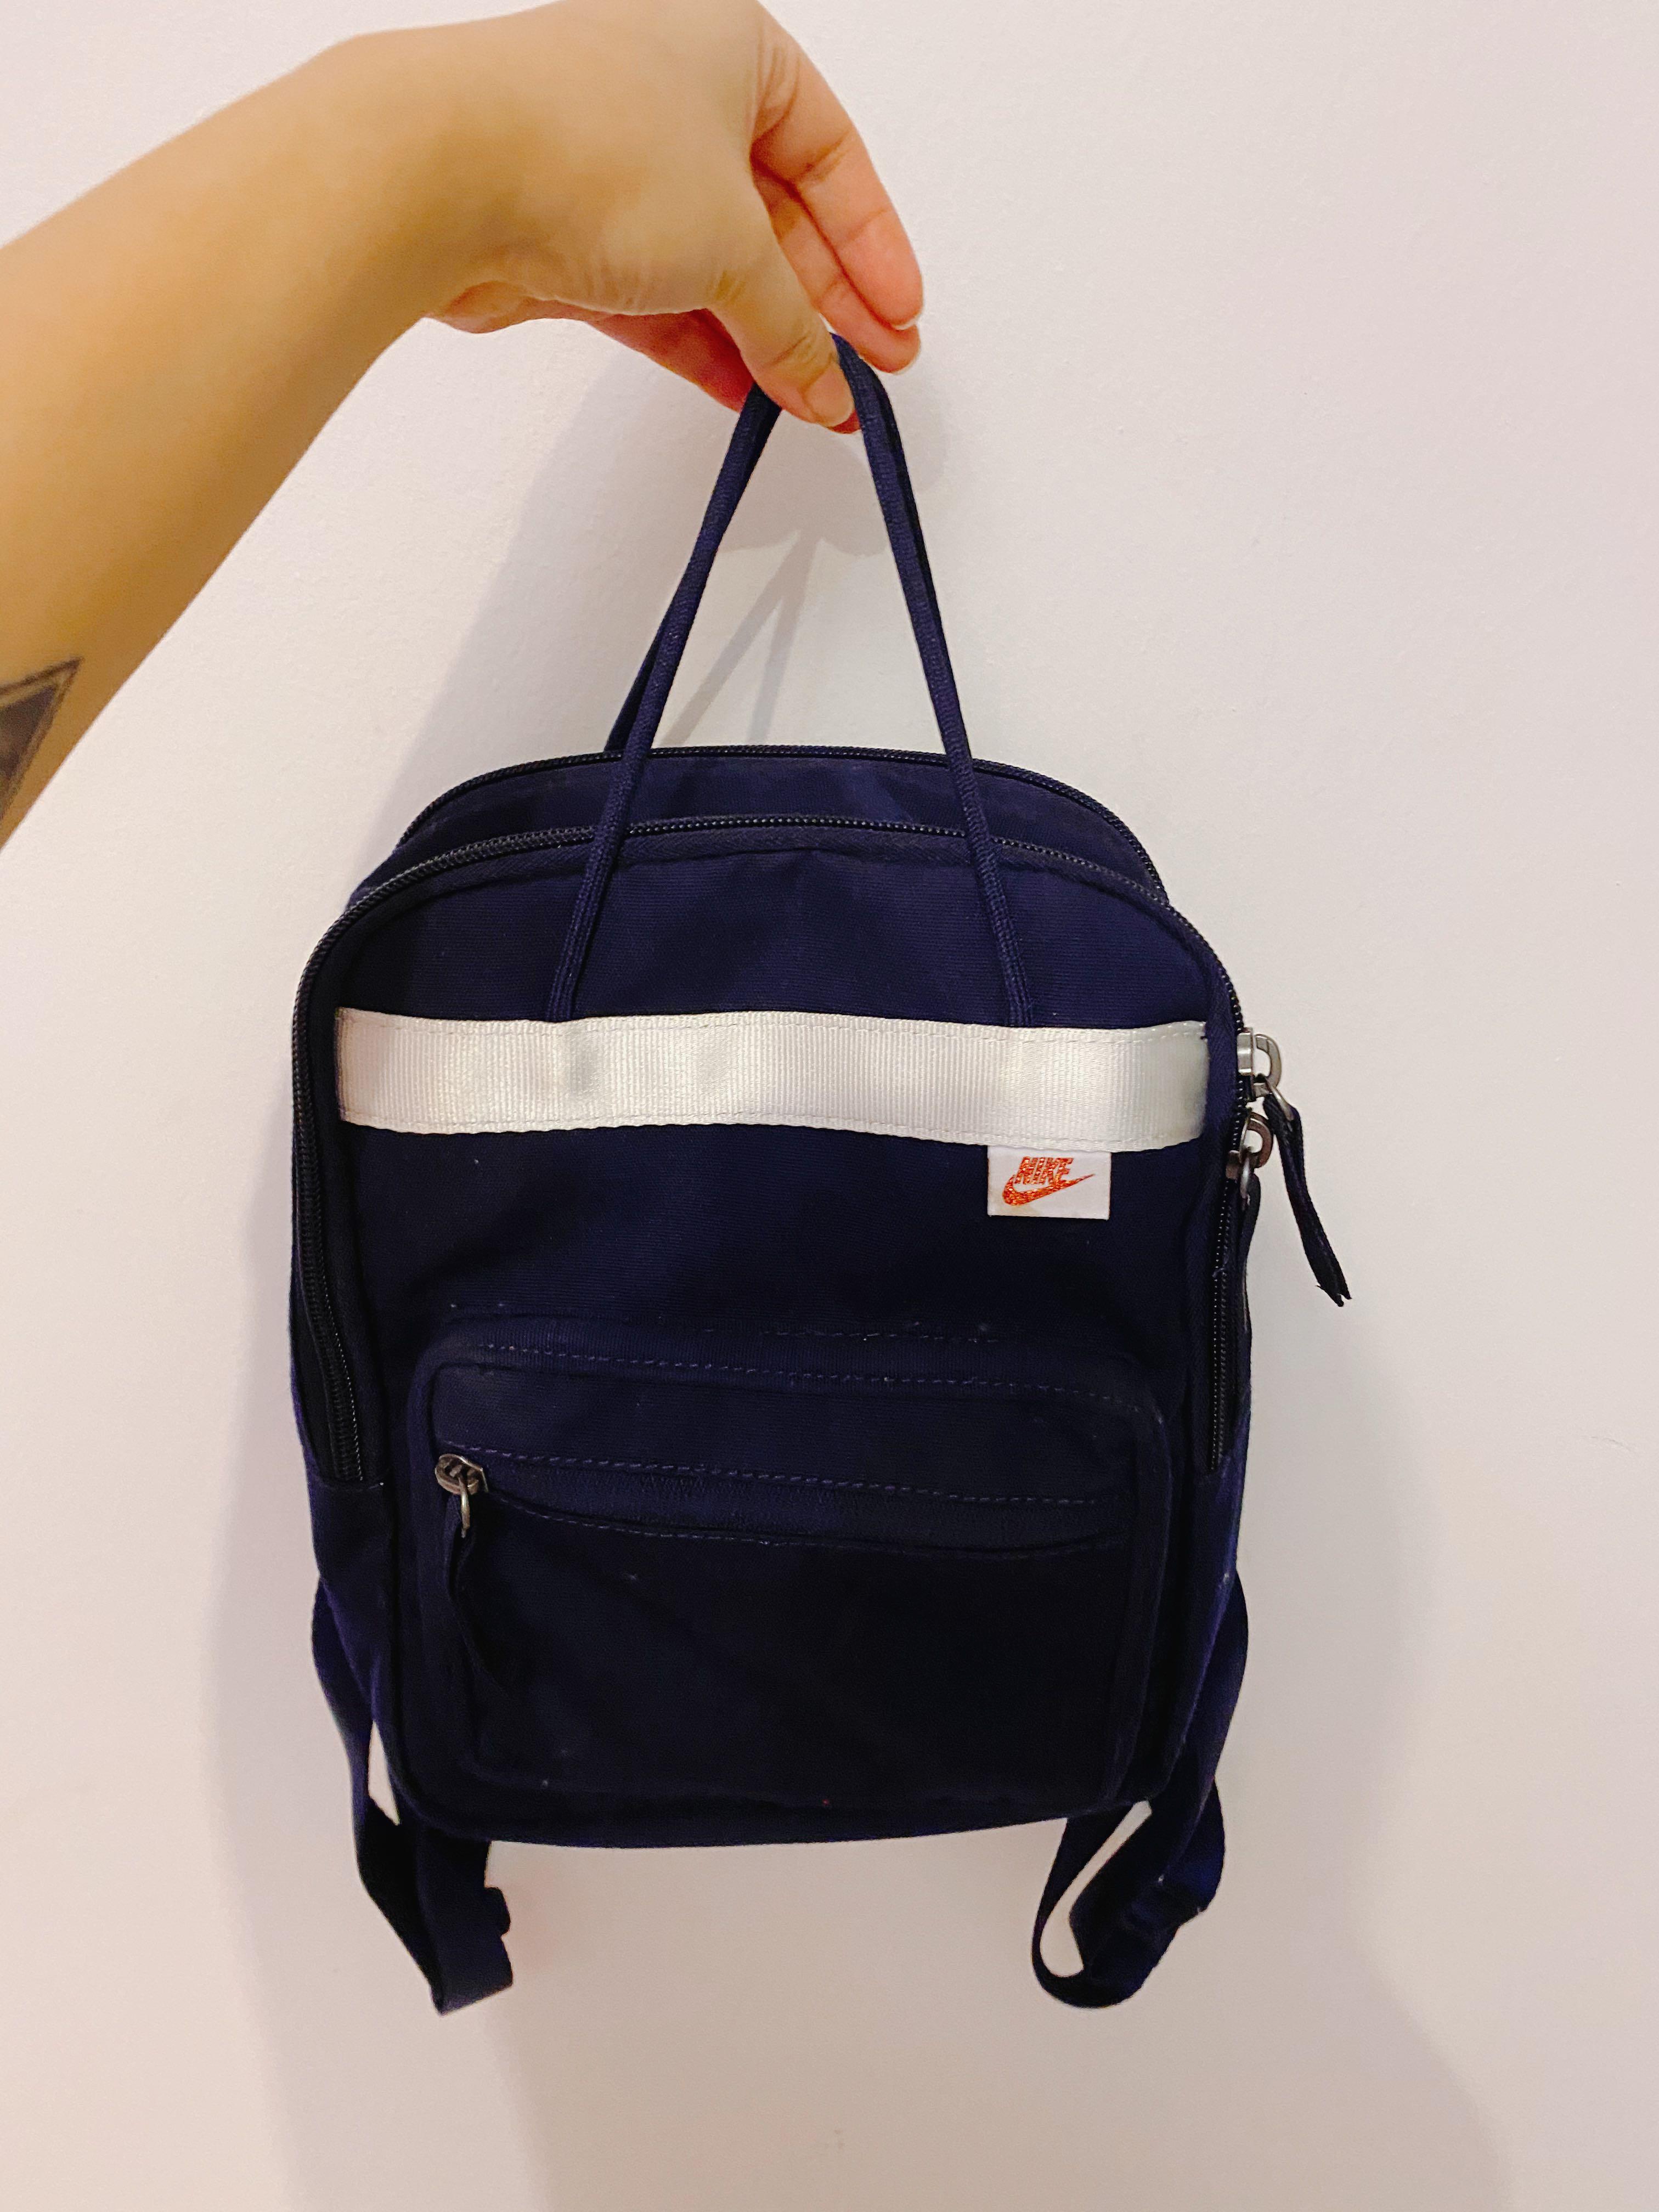 NIKE Tanjun Backpack (Mini) Women's Fashion, Bags & Backpacks on Carousell